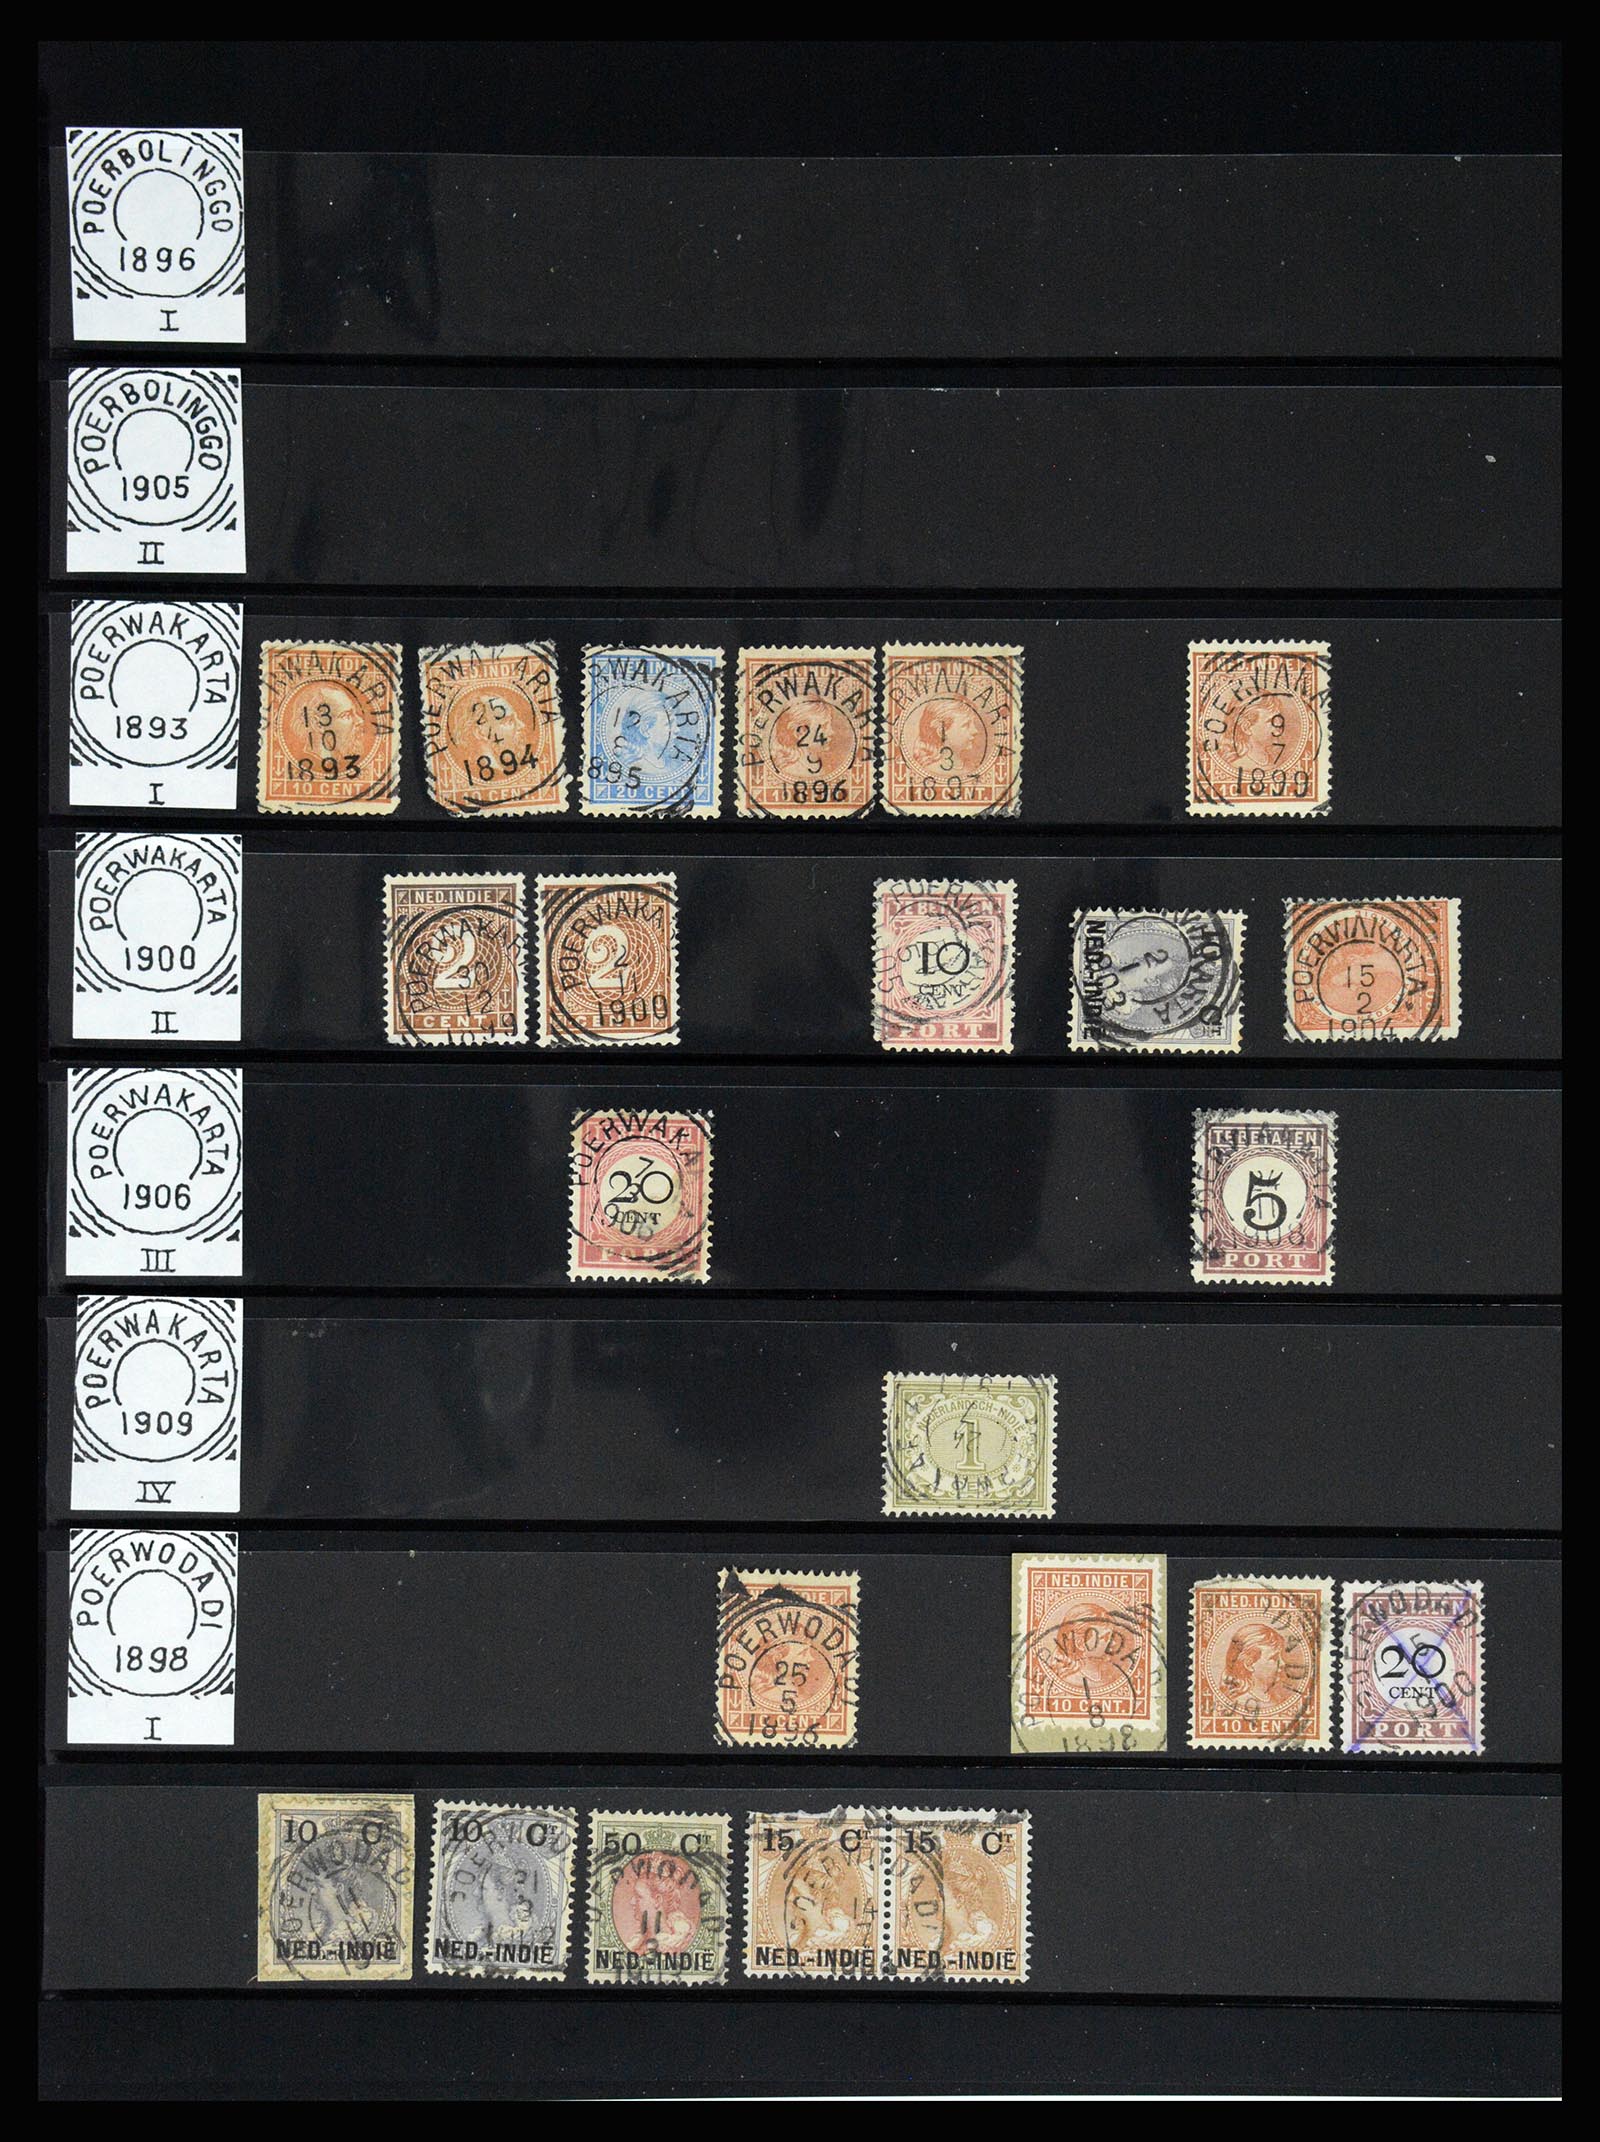 36512 137 - Stamp collection 36512 Nederlands Indië stempels 1872-1930.